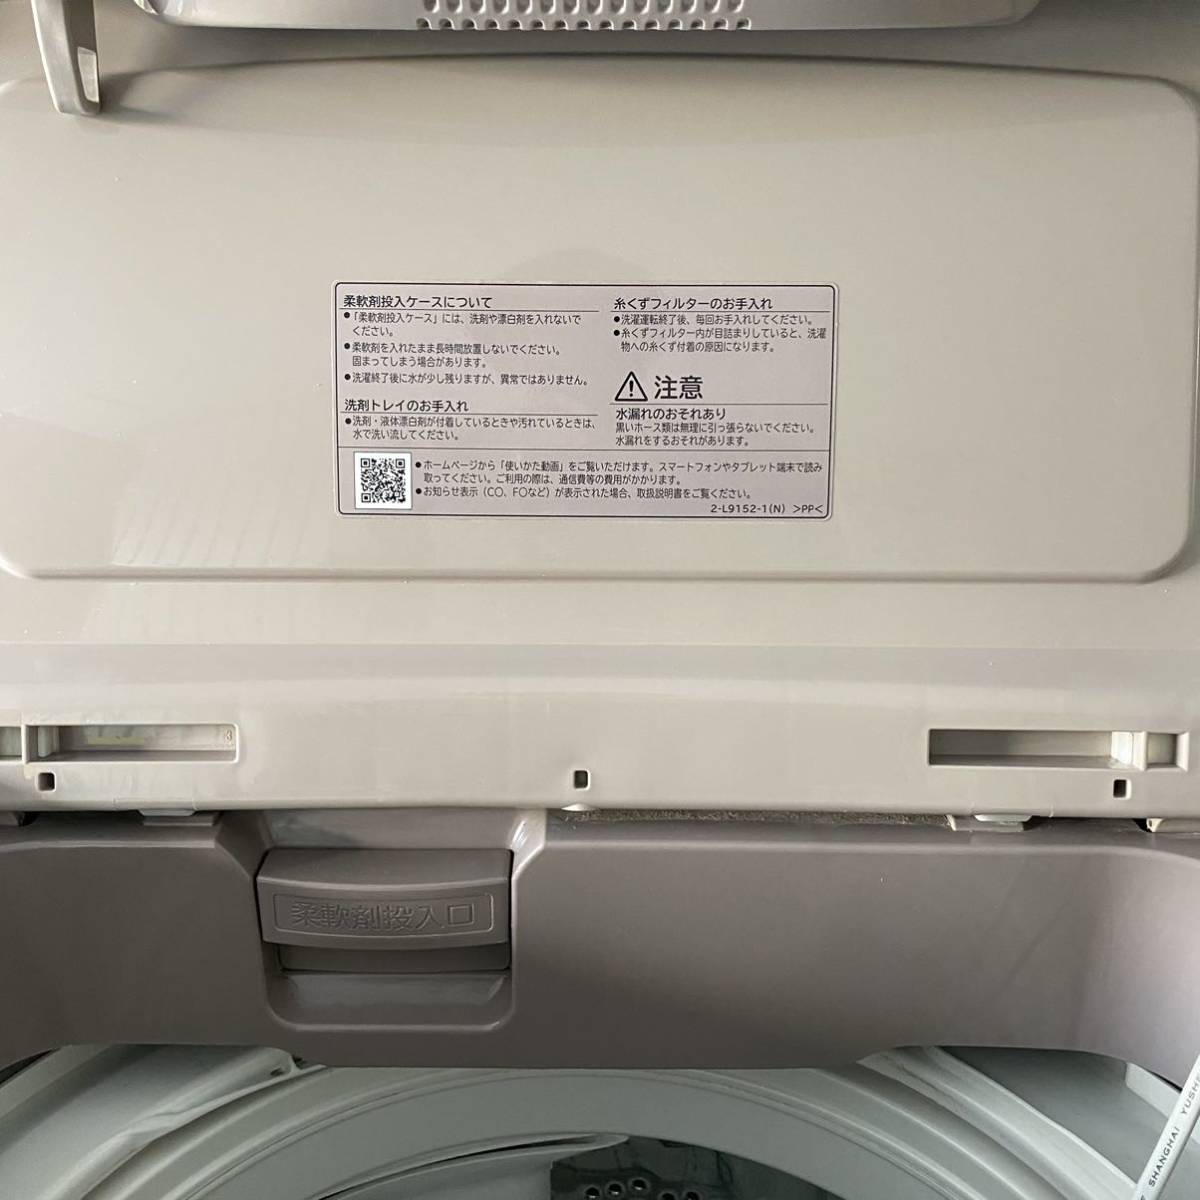 ☆日立ビートウォッシュ10Kg 全自動洗濯機BW-KSV100B 2017年製HITACHI